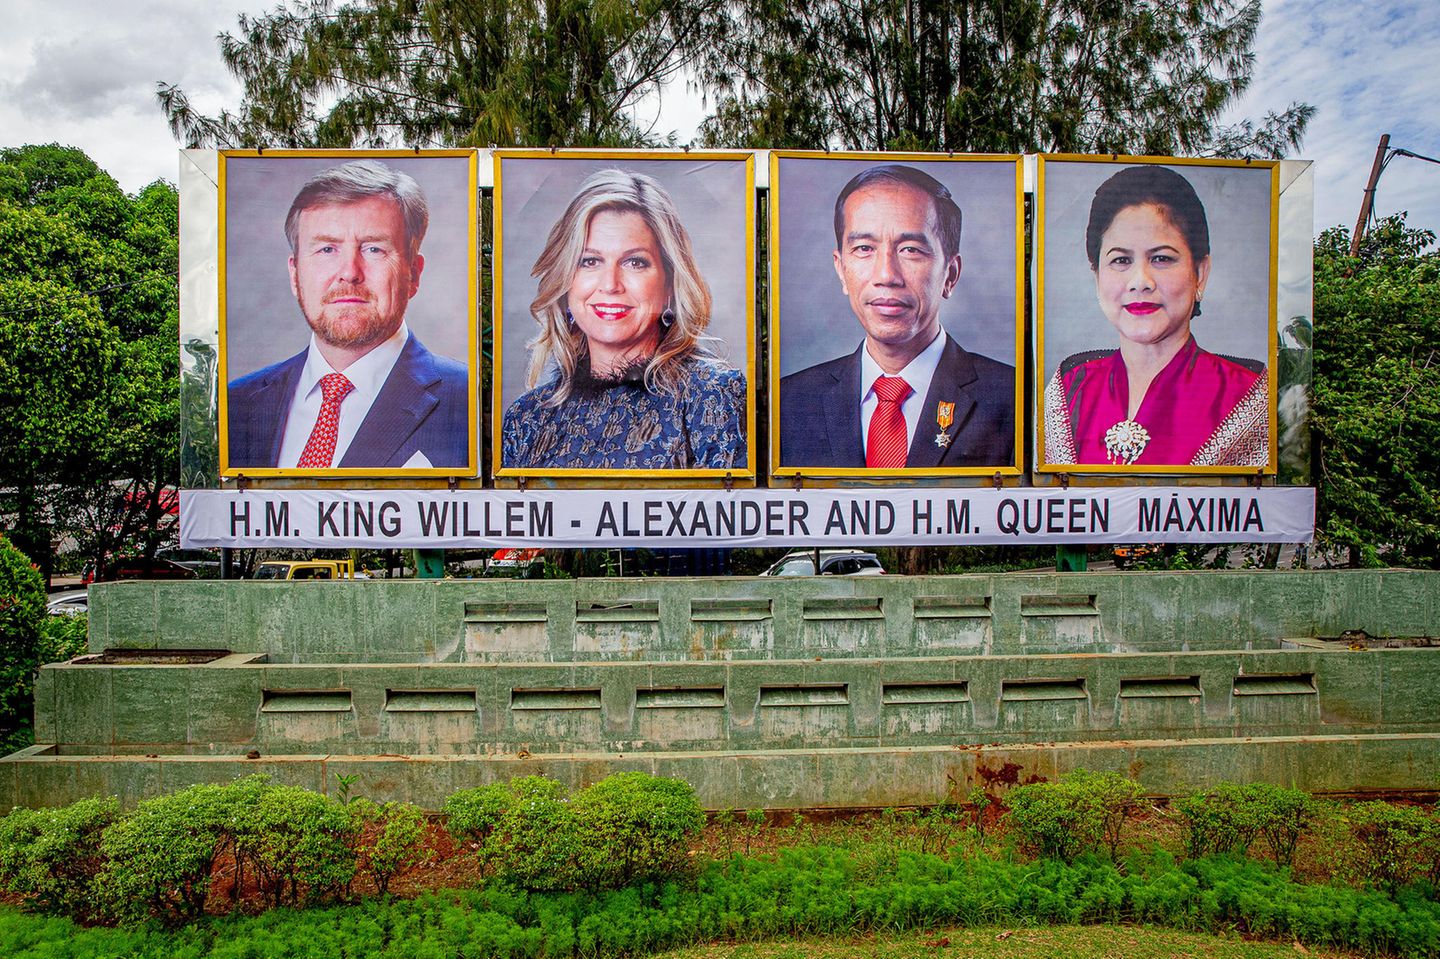 König Willem-Alexander + Königin Máxima: Die Begrüßung durch das Präsidentenpaar Widodo passiert vorerst auf Plakaten, der offizielle Teil des Staatsbesuchs beginnt einen Tag später am 10. März.